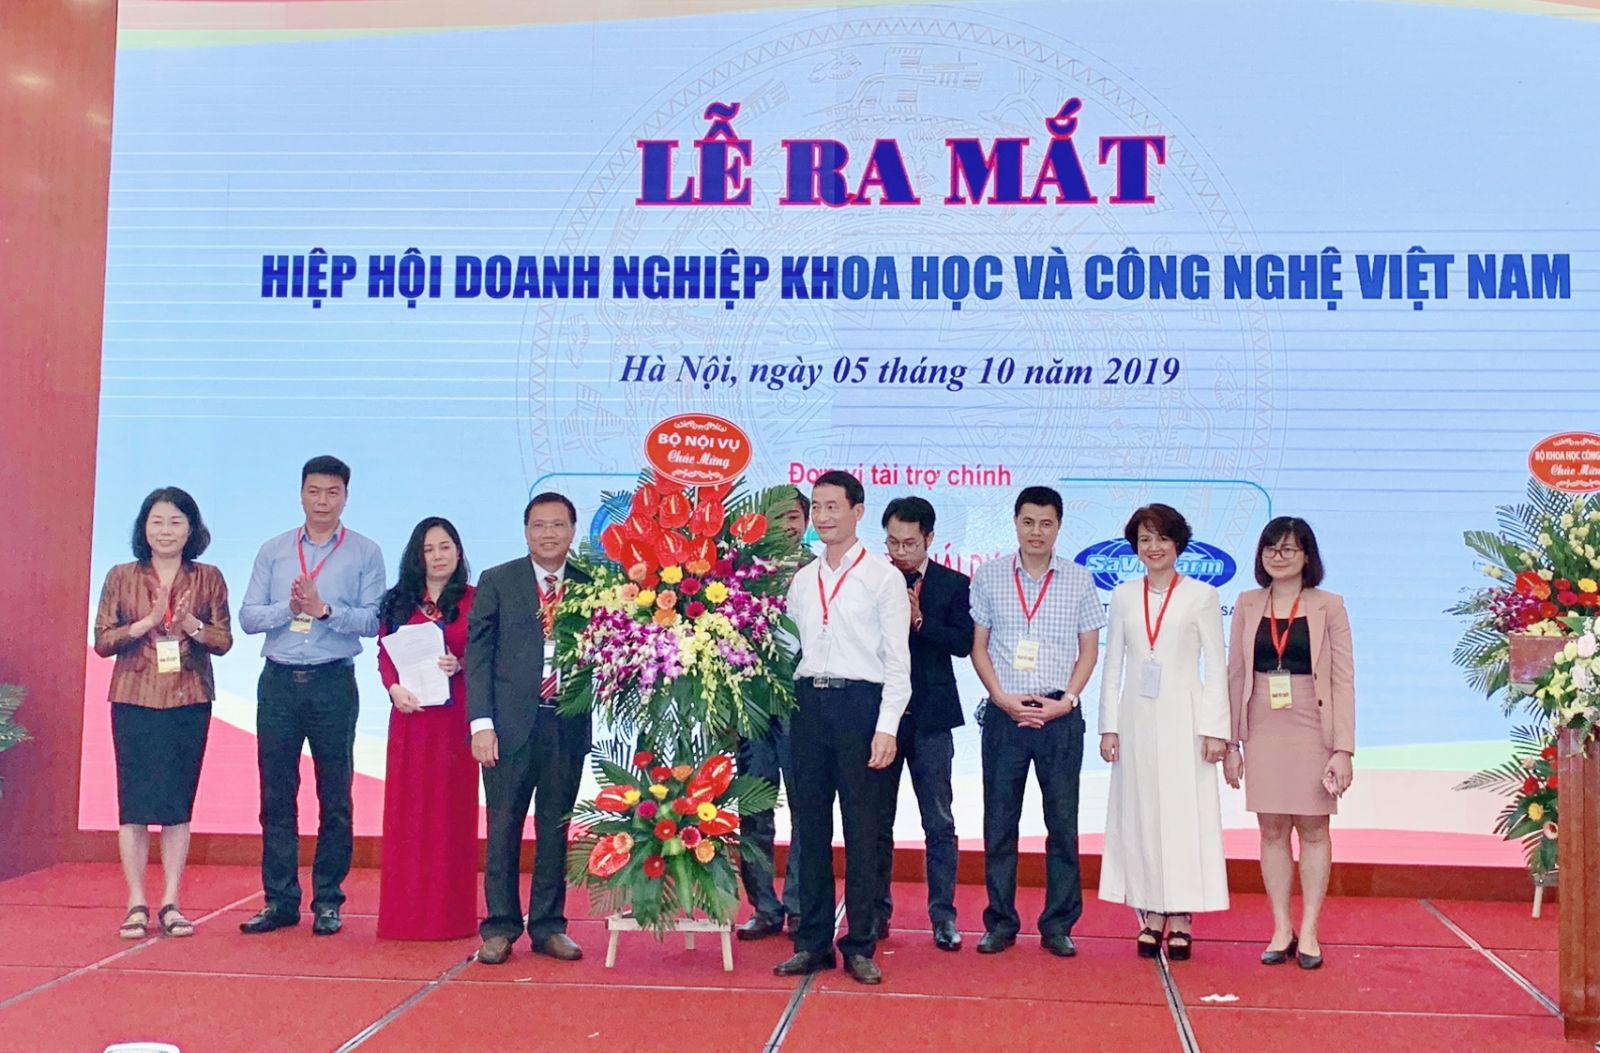 Ra mắt Hiệp hội Doanh nghiệp Khoa học và Công nghệ Việt Nam